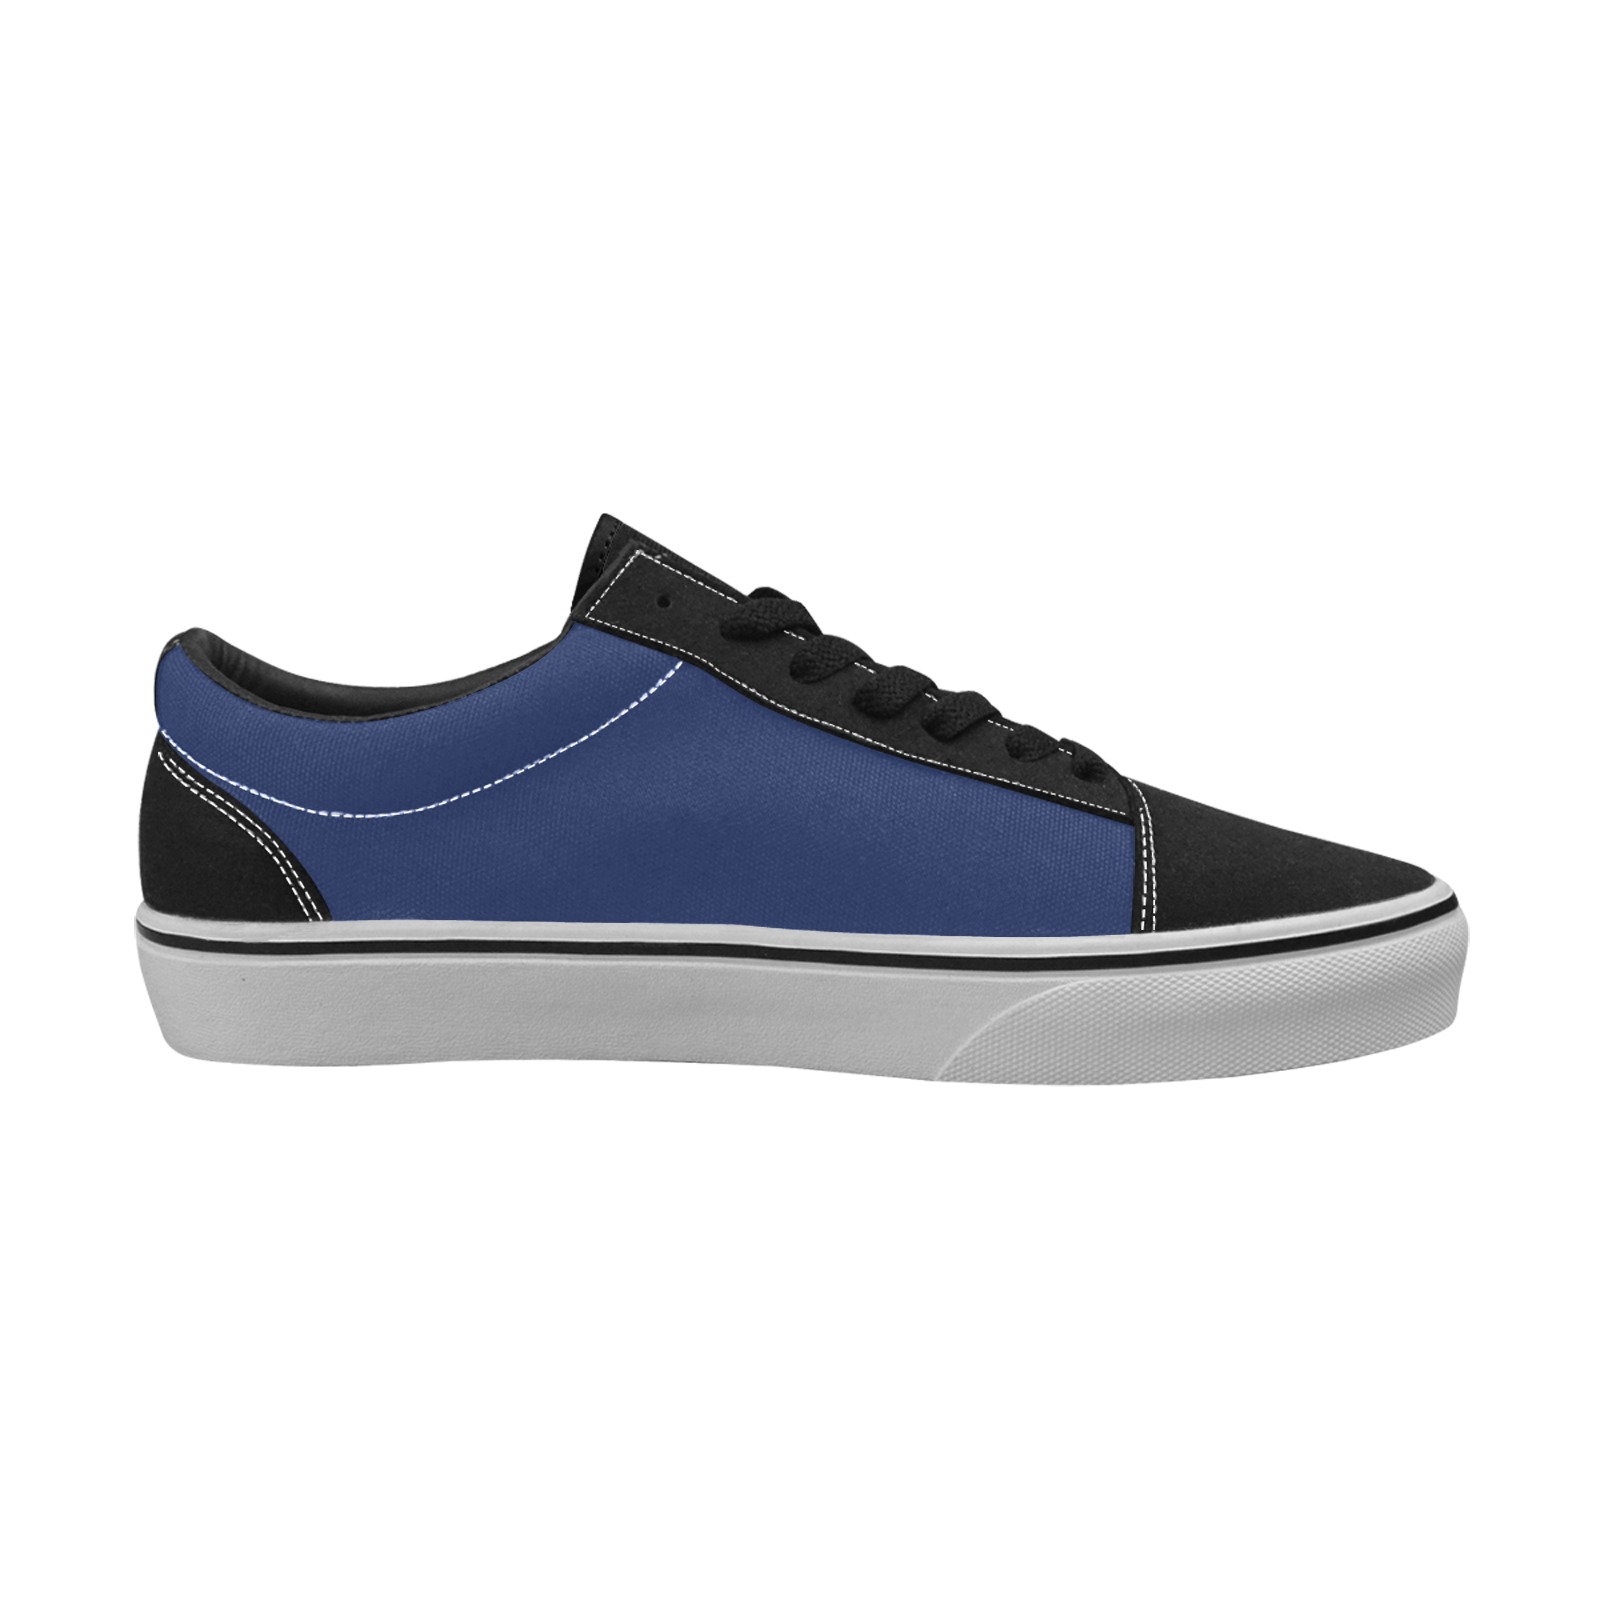 color Delft blue Women's Low Top Skateboarding Shoes (Model E001-2)